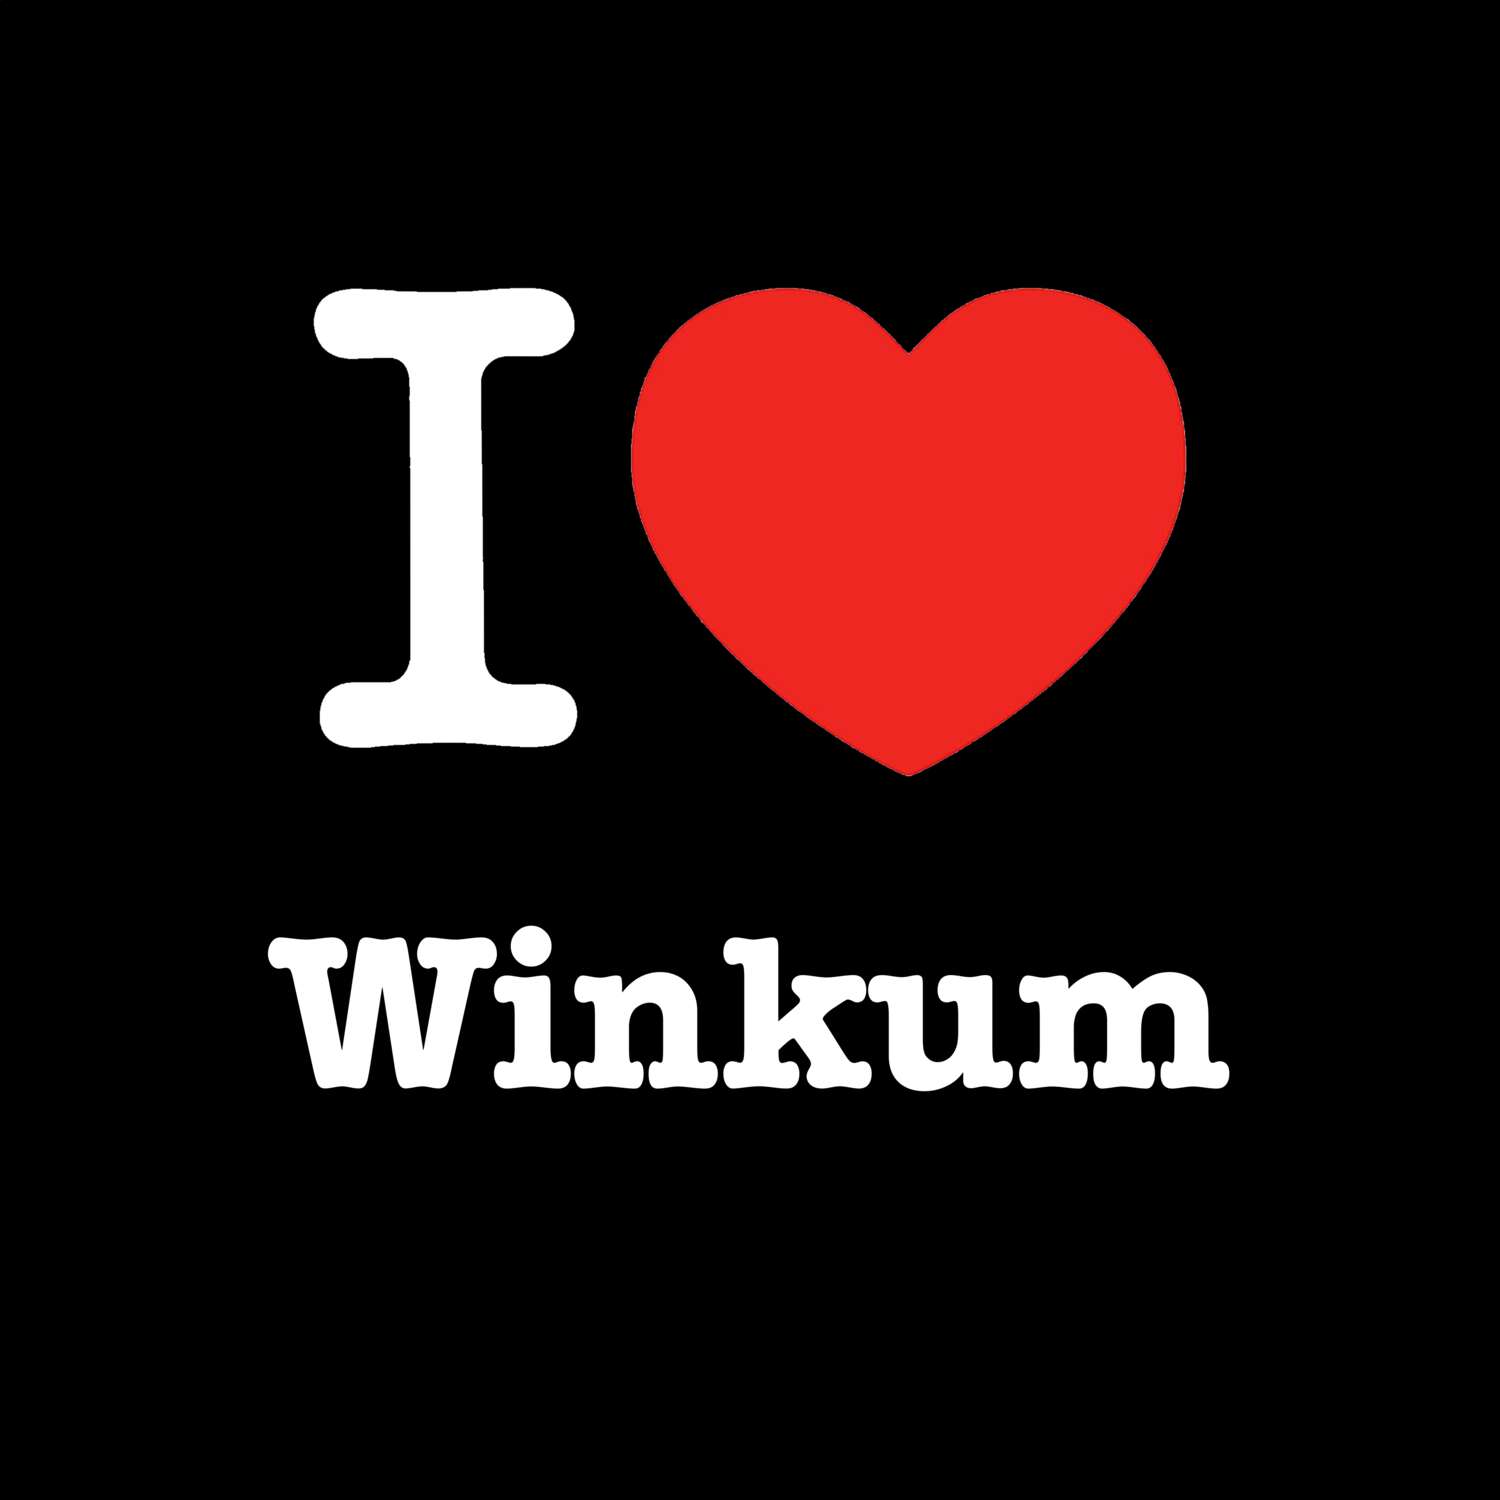 Winkum T-Shirt »I love«